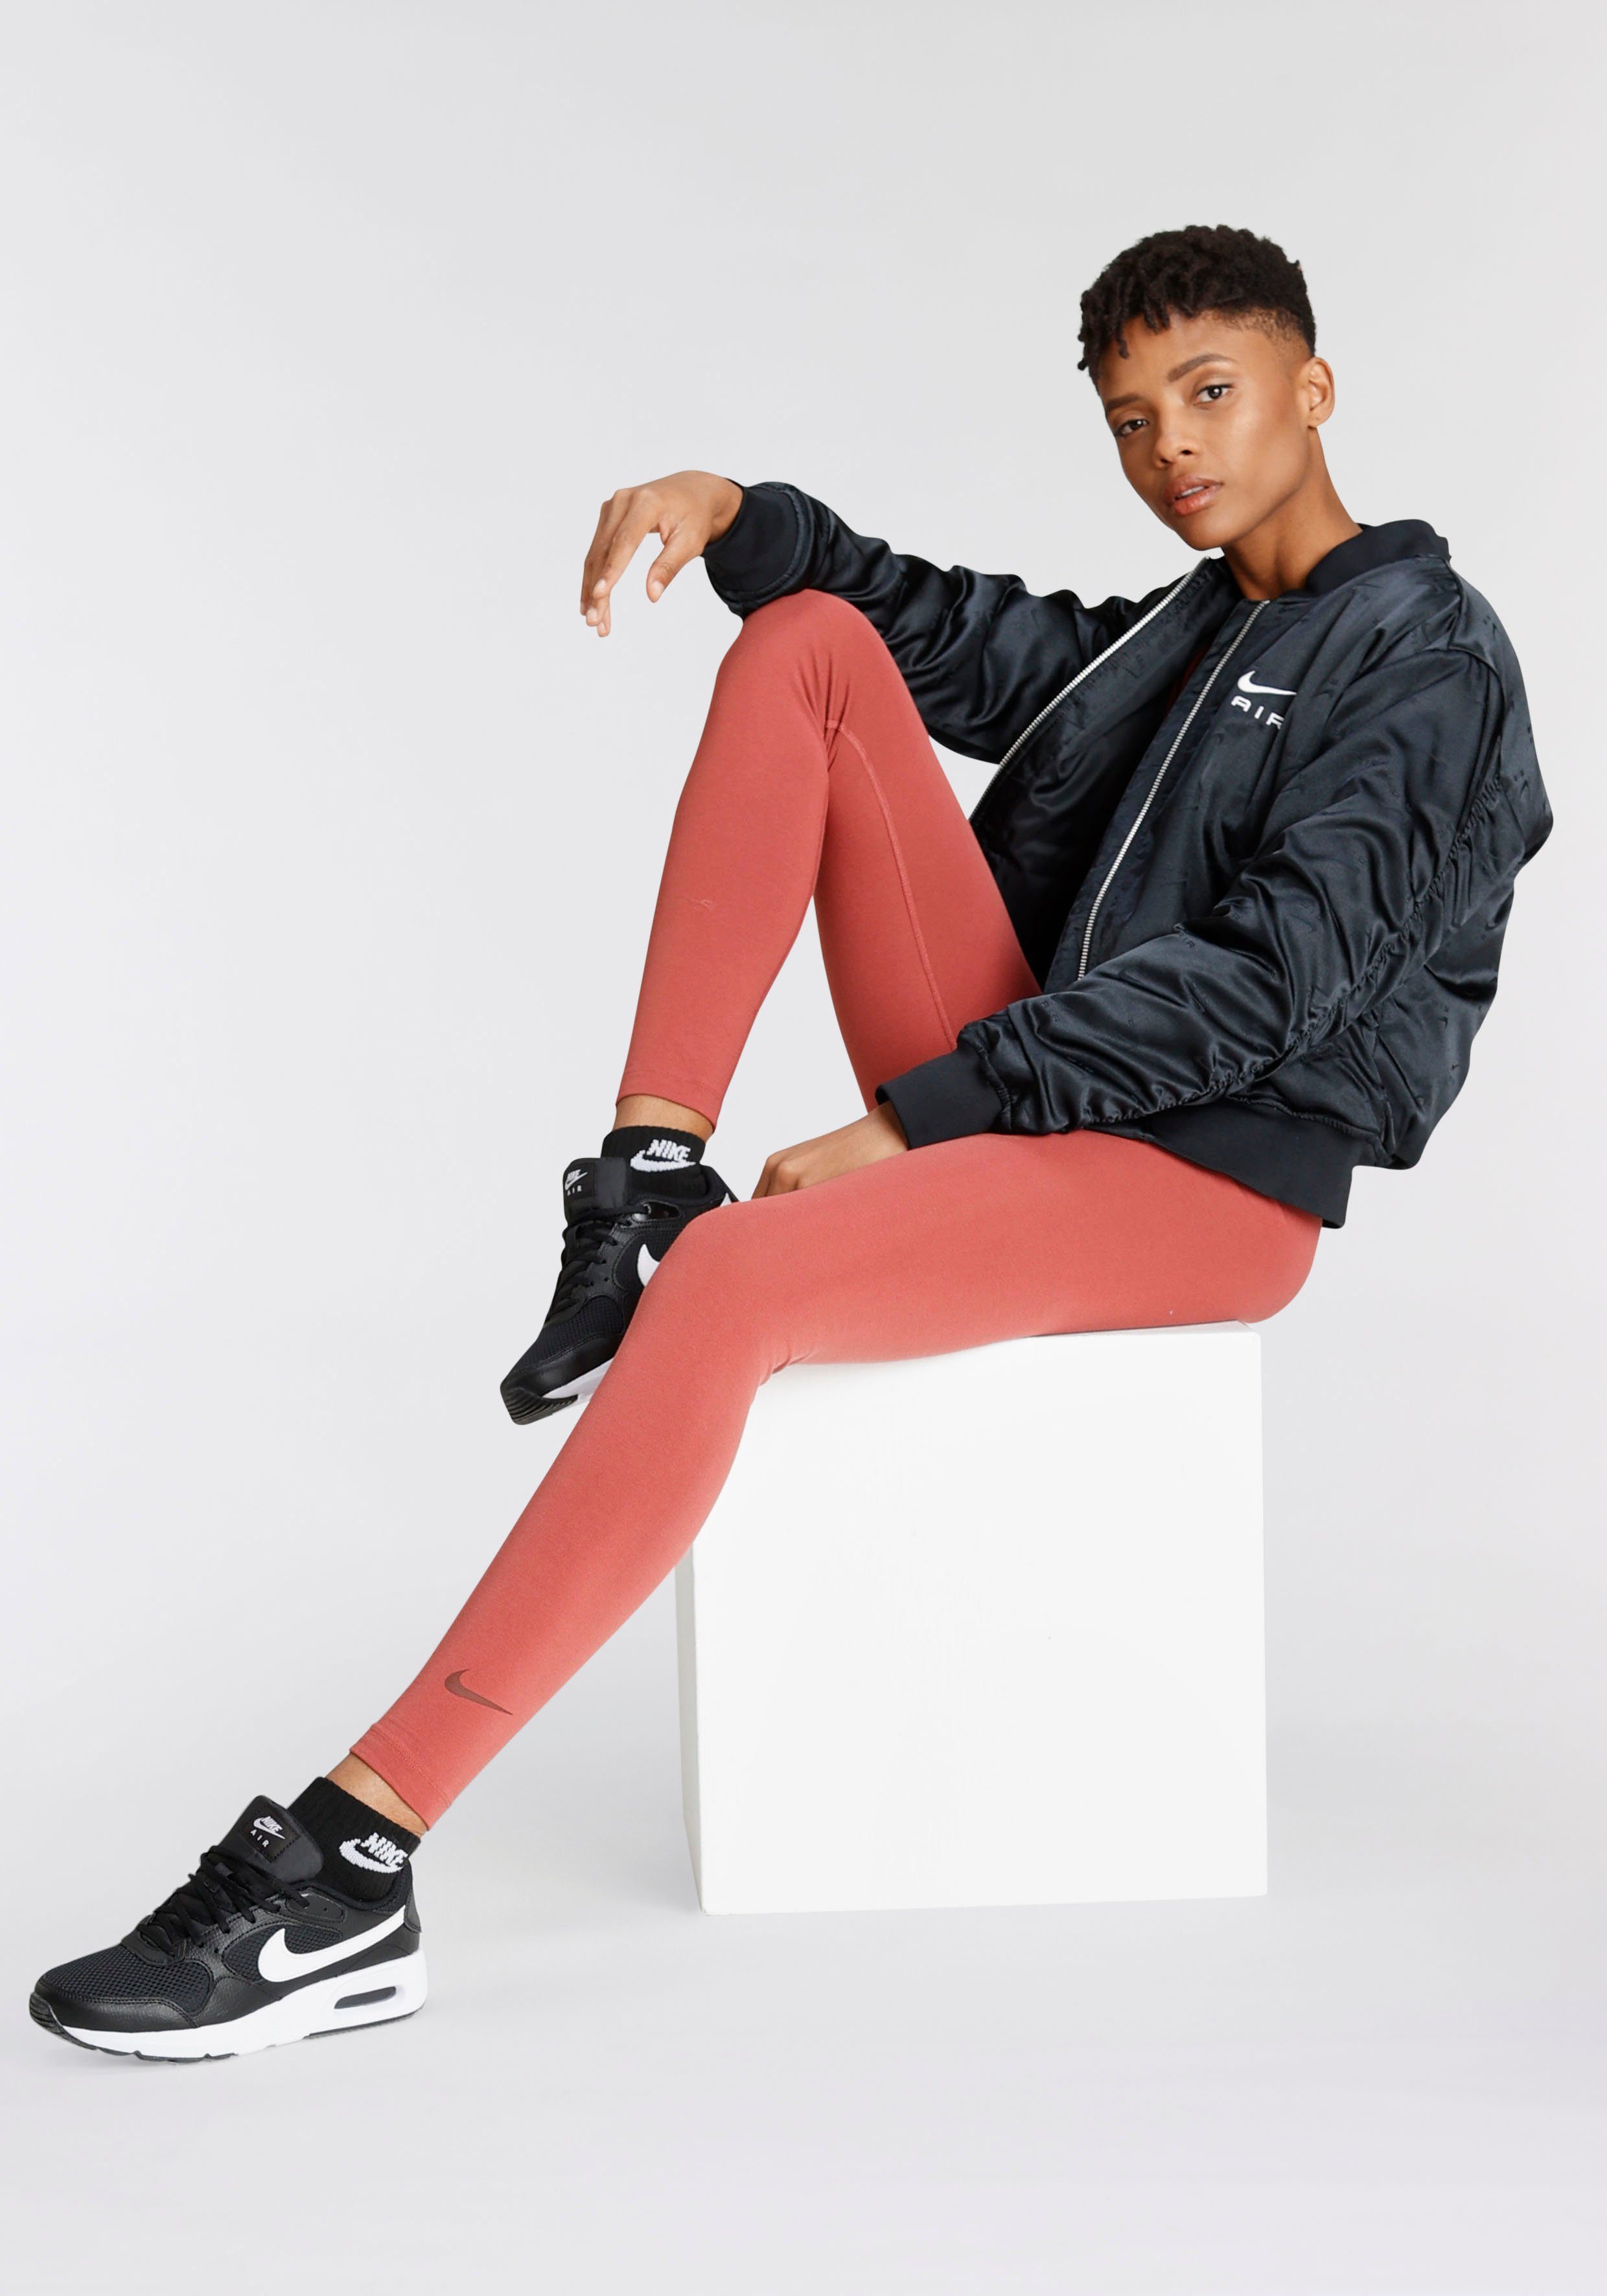 Sportswear Blouson Nike Women's Bomber Air Jacket